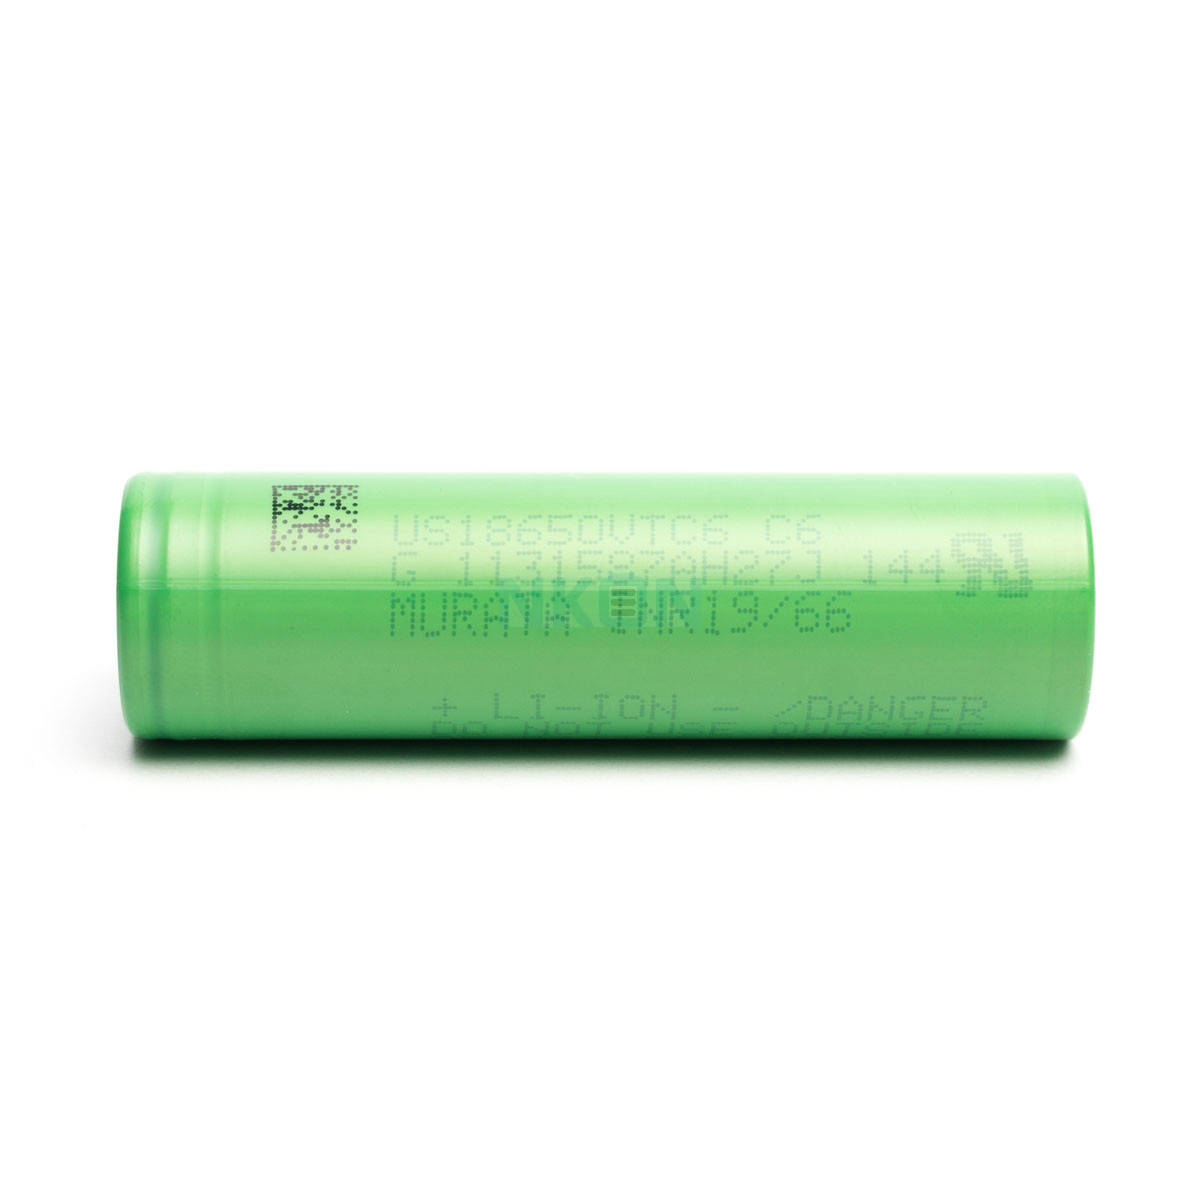  2x Akku Lithium-Ionen Batterie Sony Konion us18650  vtc6 3000mAh Battery 3,7V 30A Verdampfer E-Zigarette